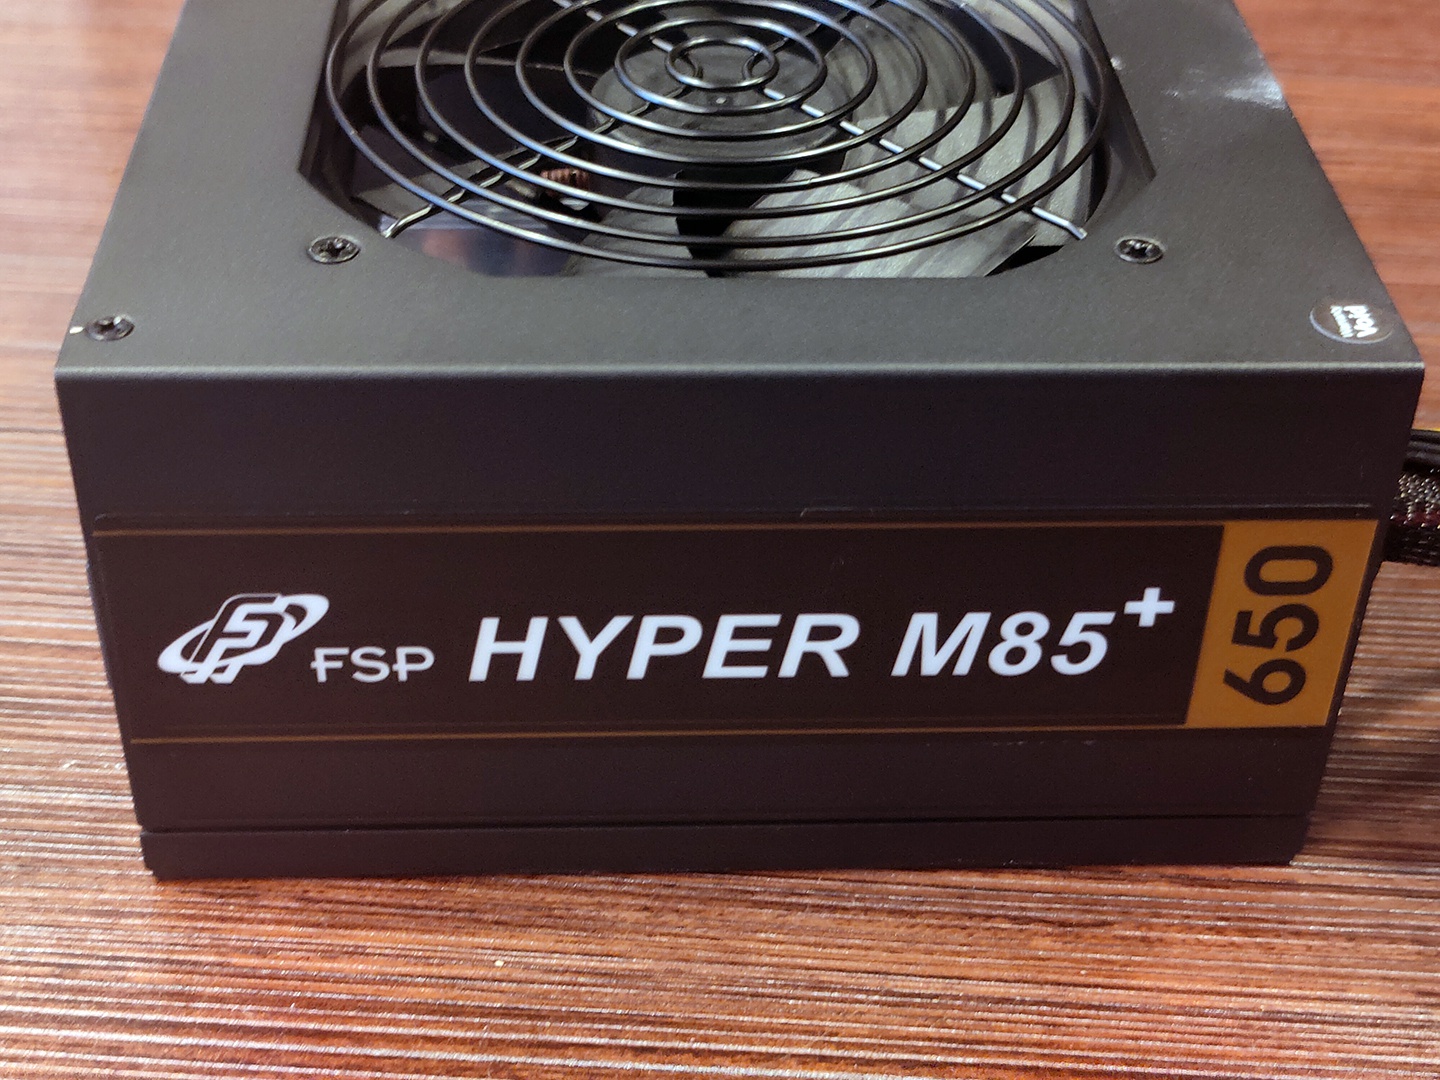 Nguồn máy tính Hyper M85+ HA650M có thiết kế semi-modular